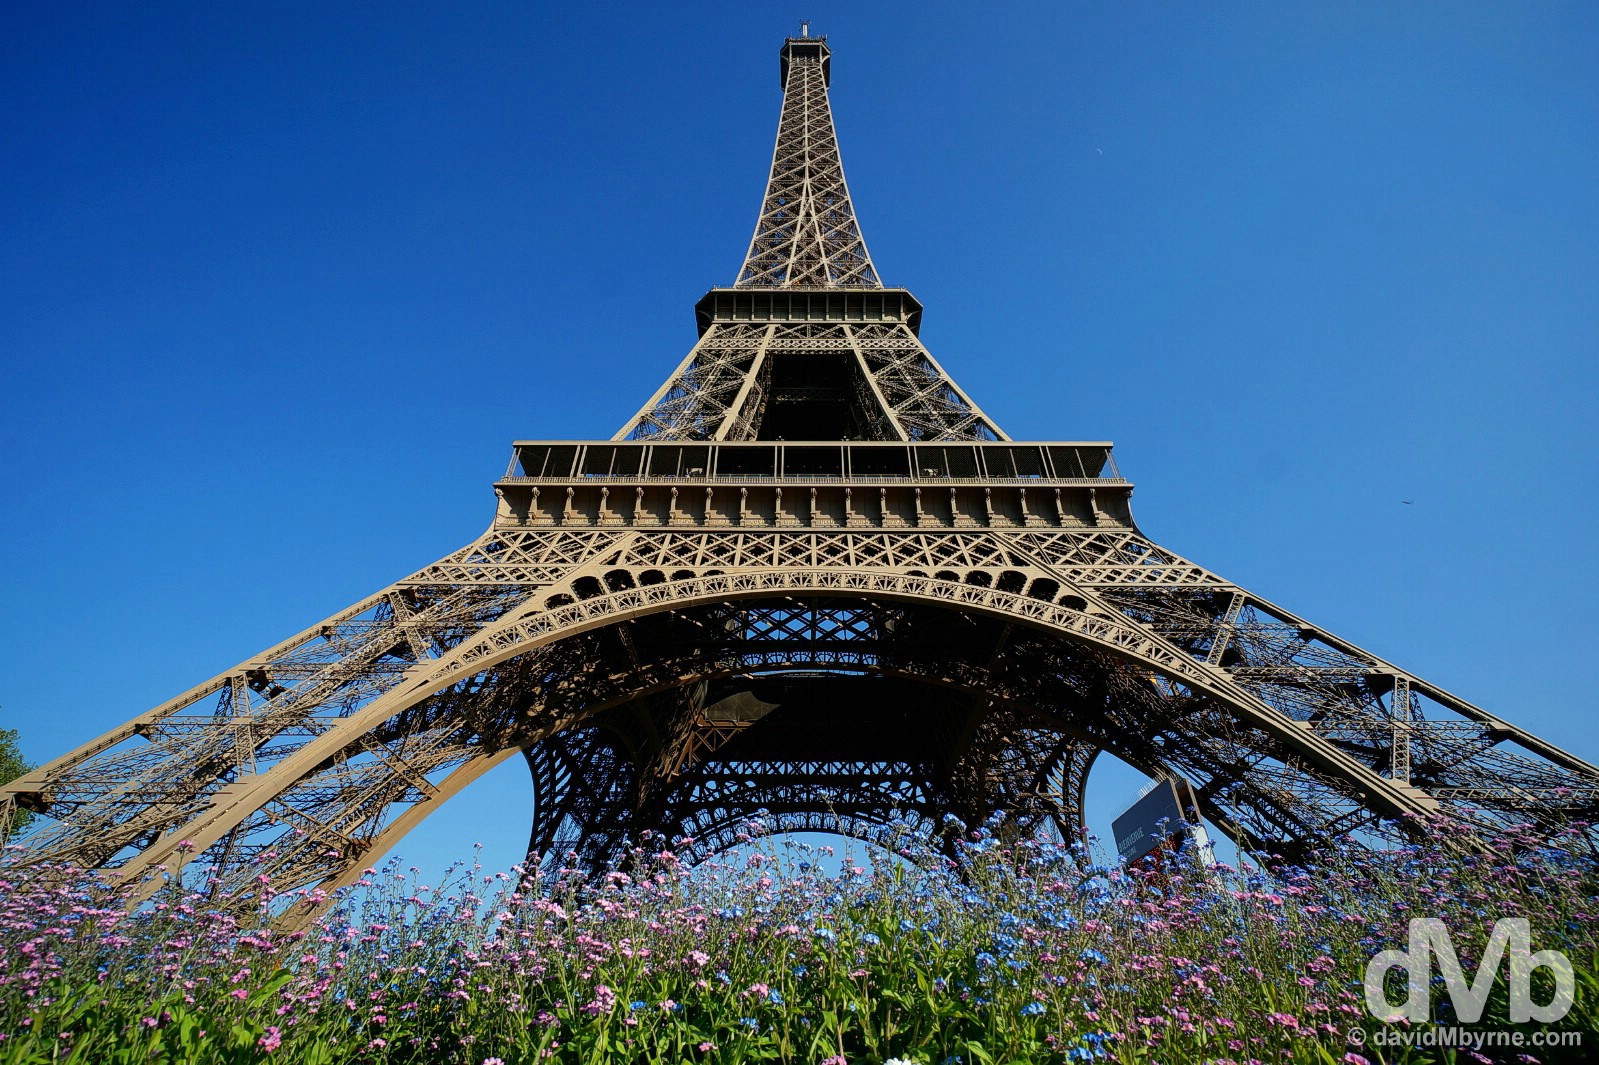 Eiffel Tower, Paris, France. April 23, 2015.